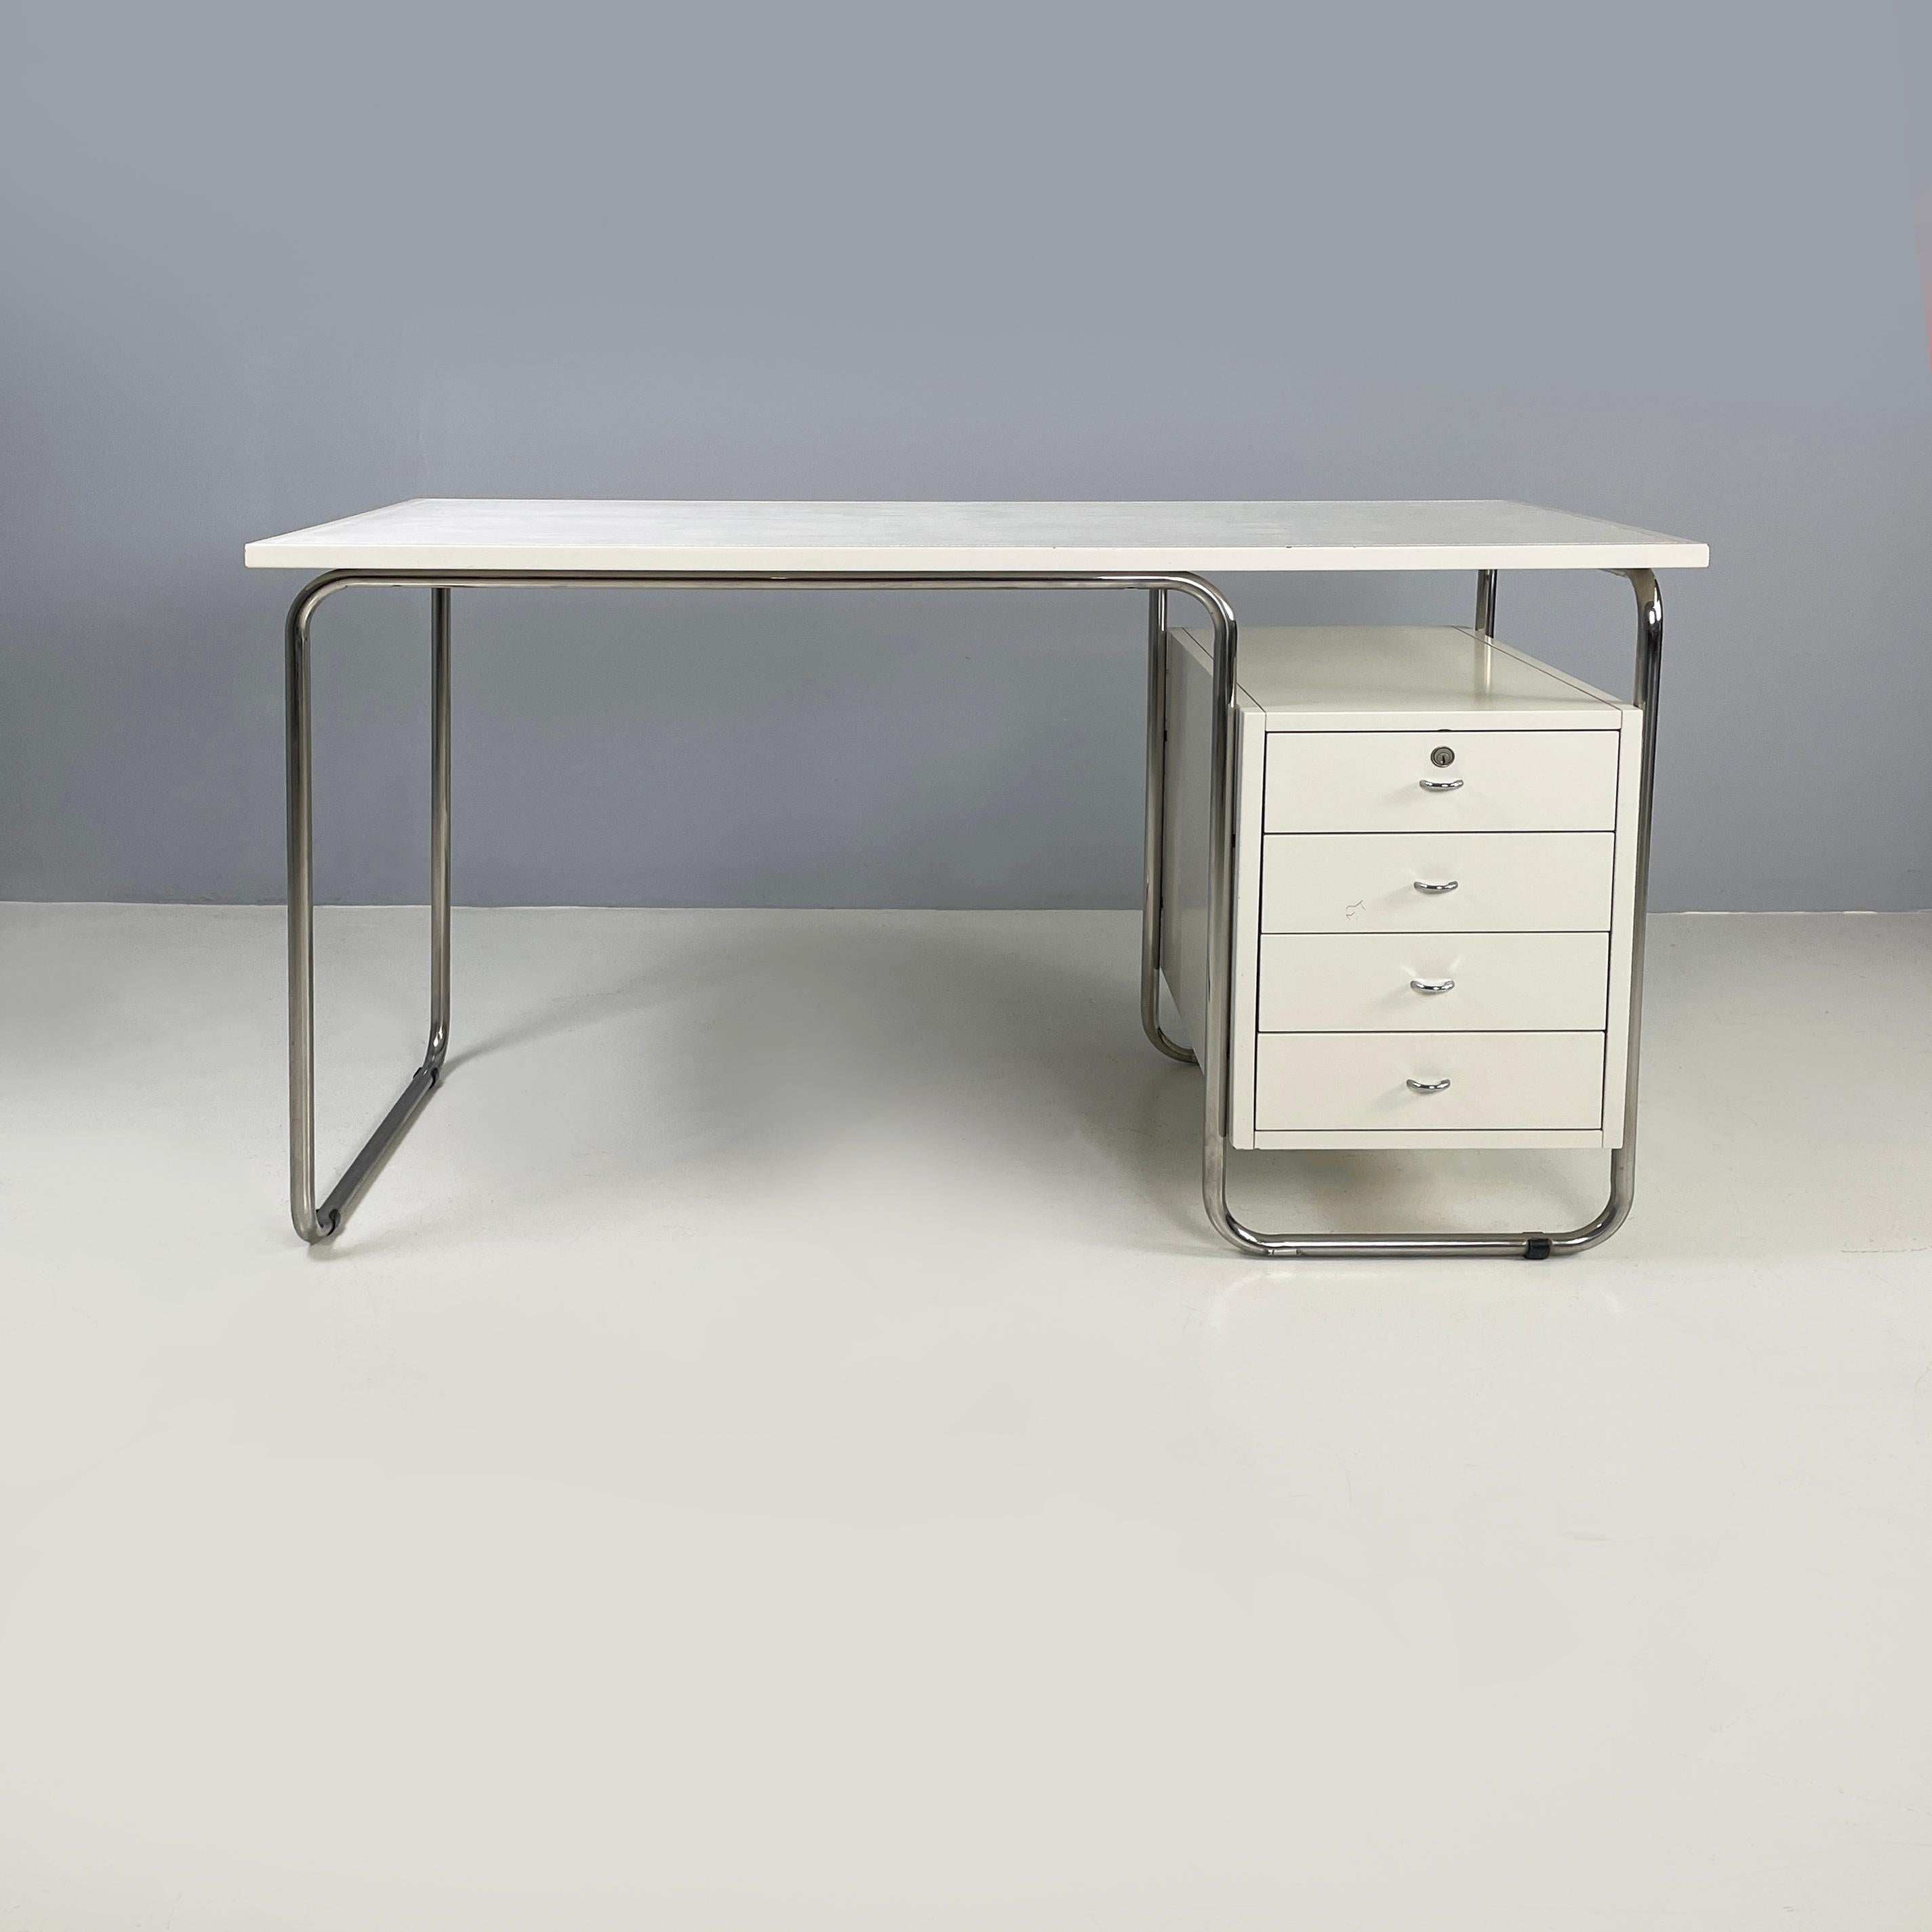 Italienischer weißer Bauhaus-Schreibtisch Comacina von Piero Bottoni für Zanotta, 1980er Jahre
Schreibtisch mod. Comacina mit rechteckiger Holzplatte und rechteckigem Einsatz aus weißem Leder. An der Seite befindet sich eine weiß lackierte